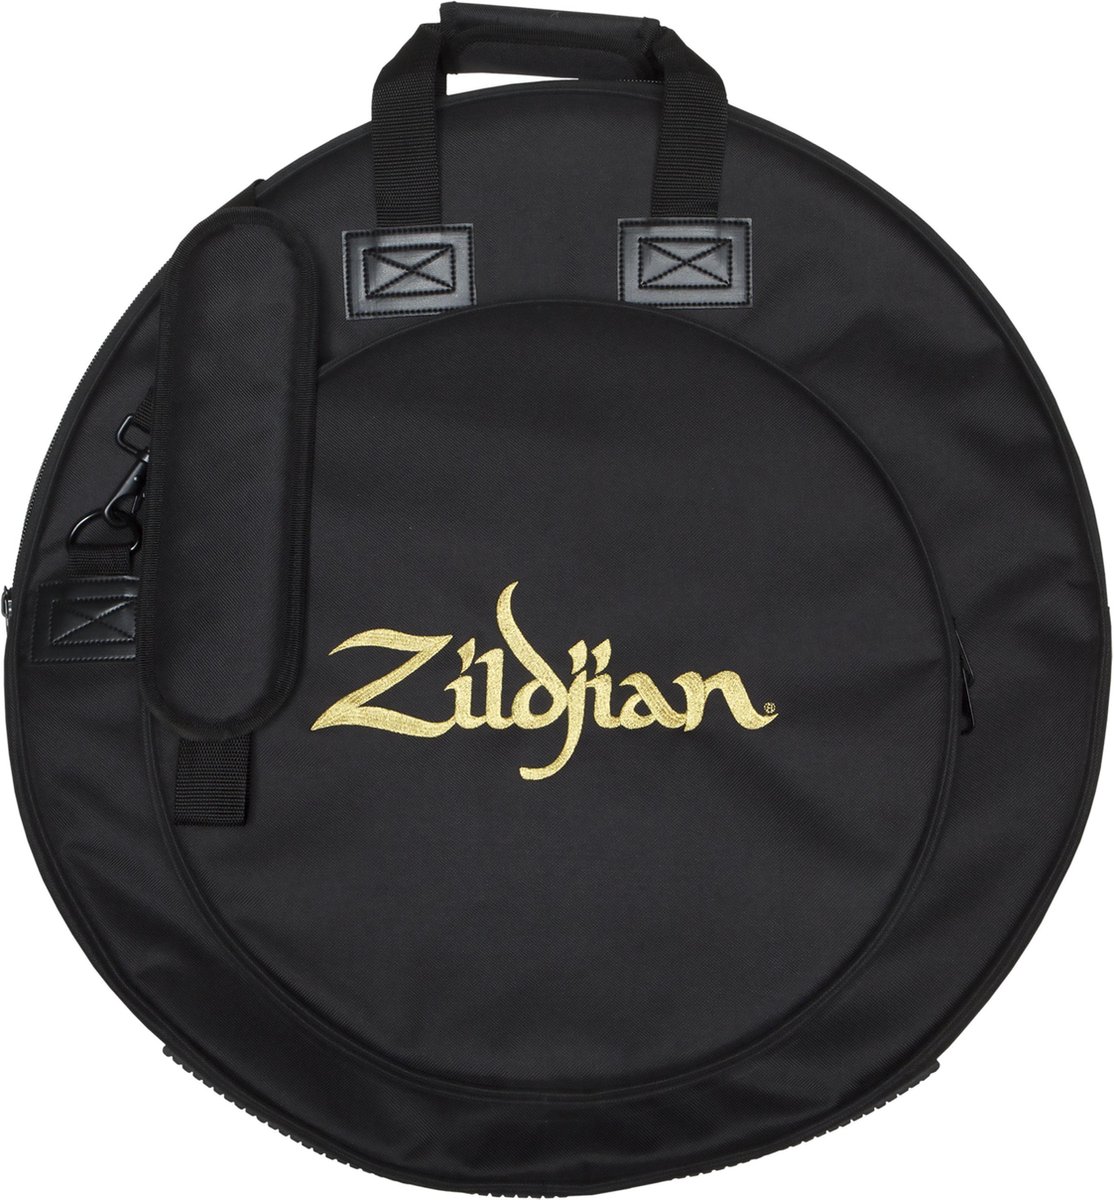 Zildjian ZCB22PV2 Premium Cymbal Bag 22 inch